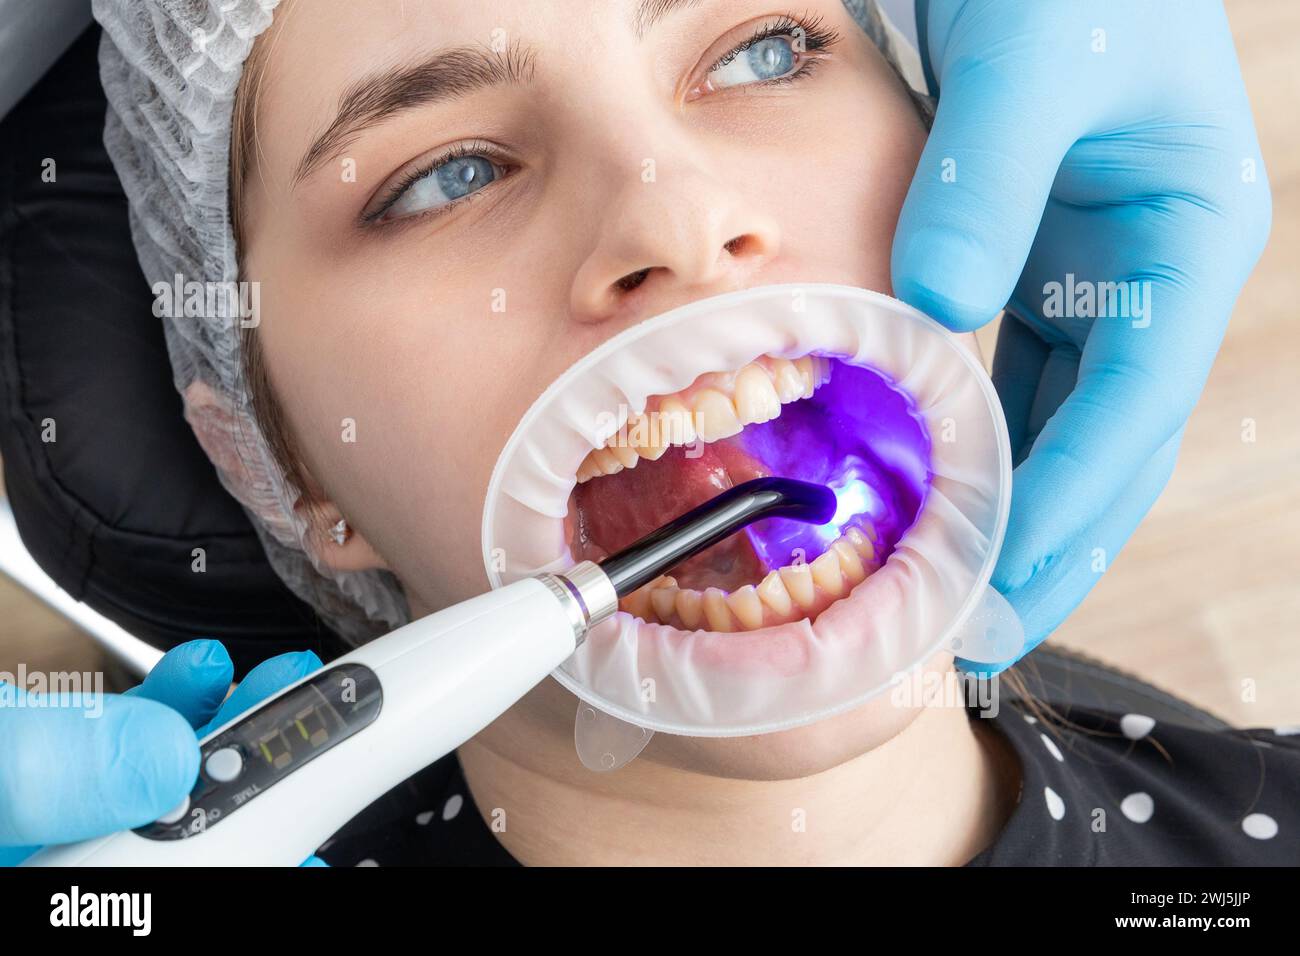 Vue en gros plan d'un dentiste utilisant une lampe UV à durcissement dentaire sur les dents du patient Banque D'Images